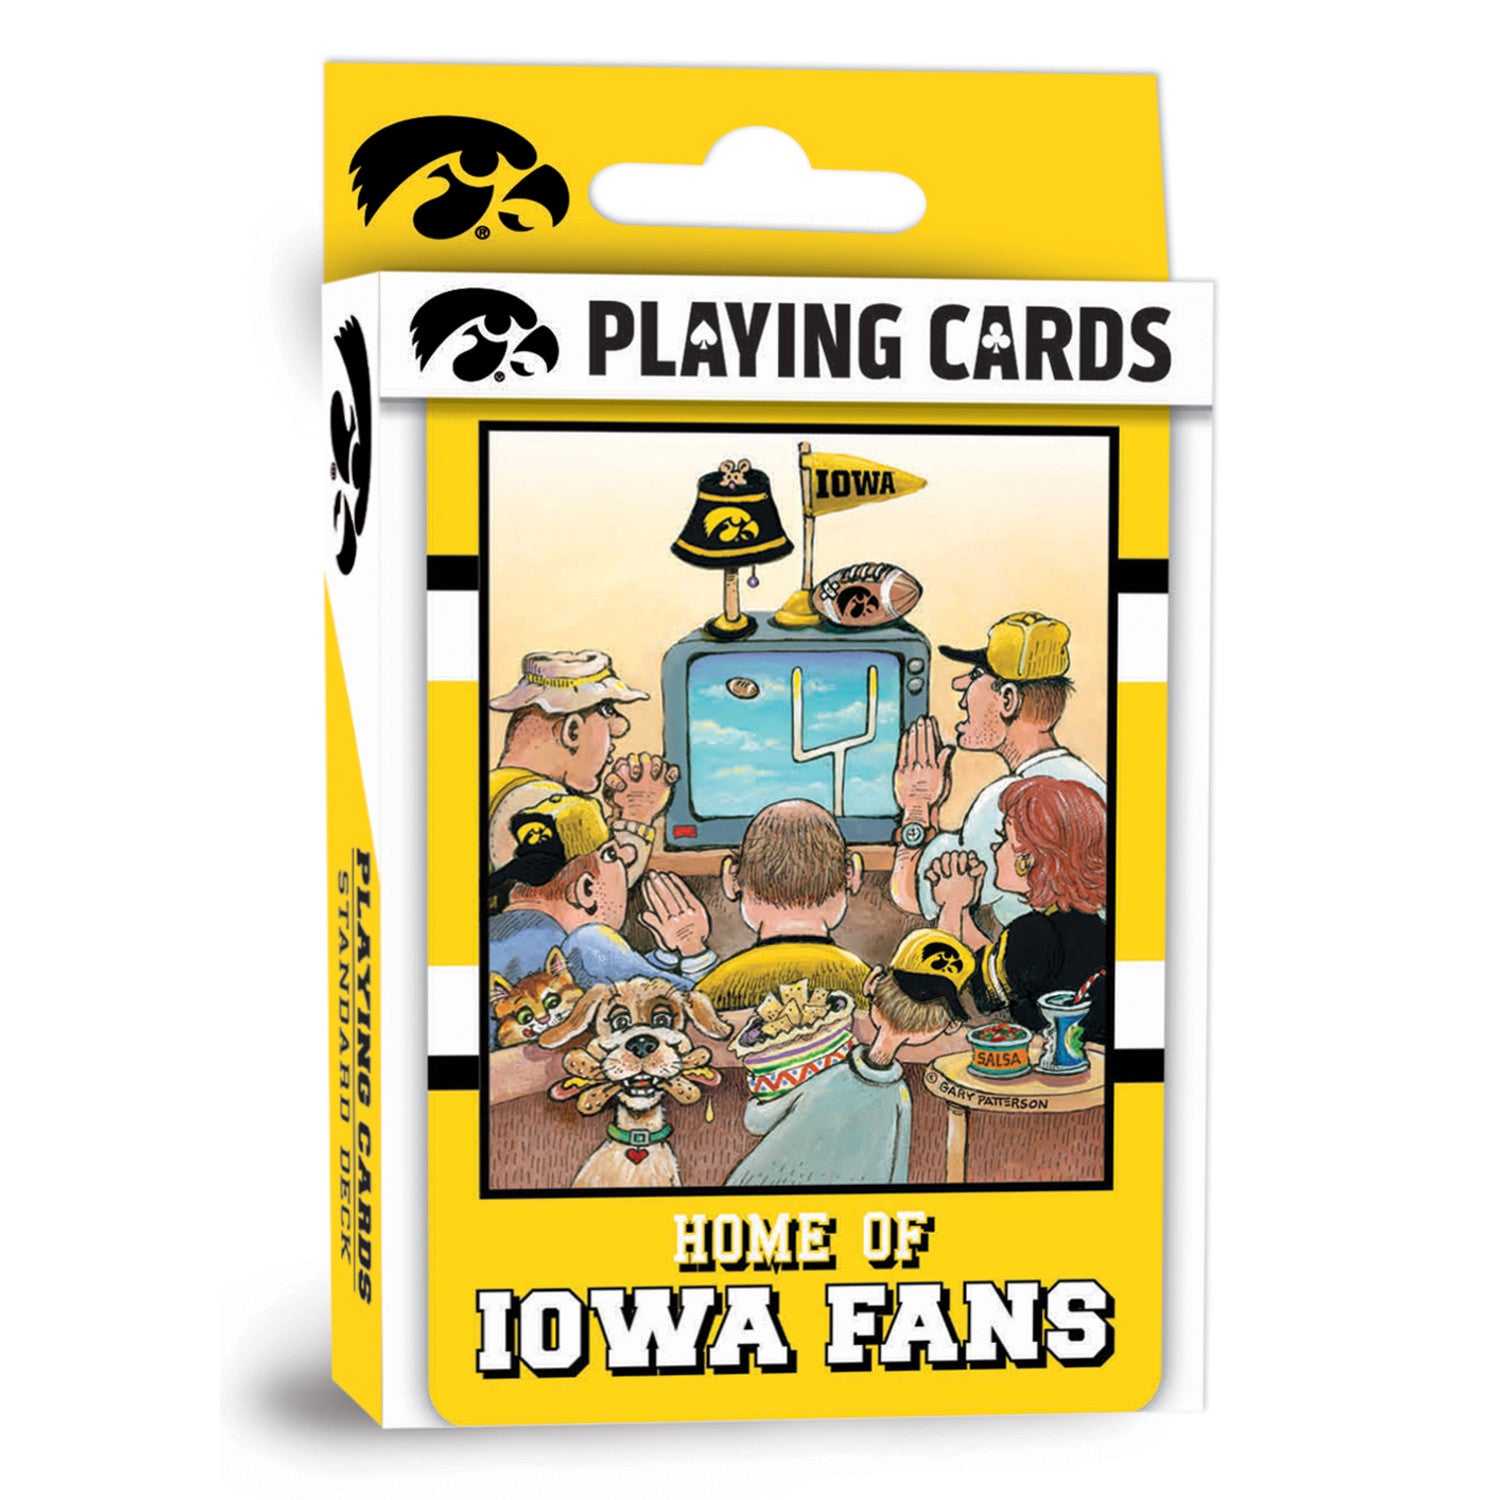 Iowa Hawkeyes Fan Deck Playing Cards - 54 Card Deck